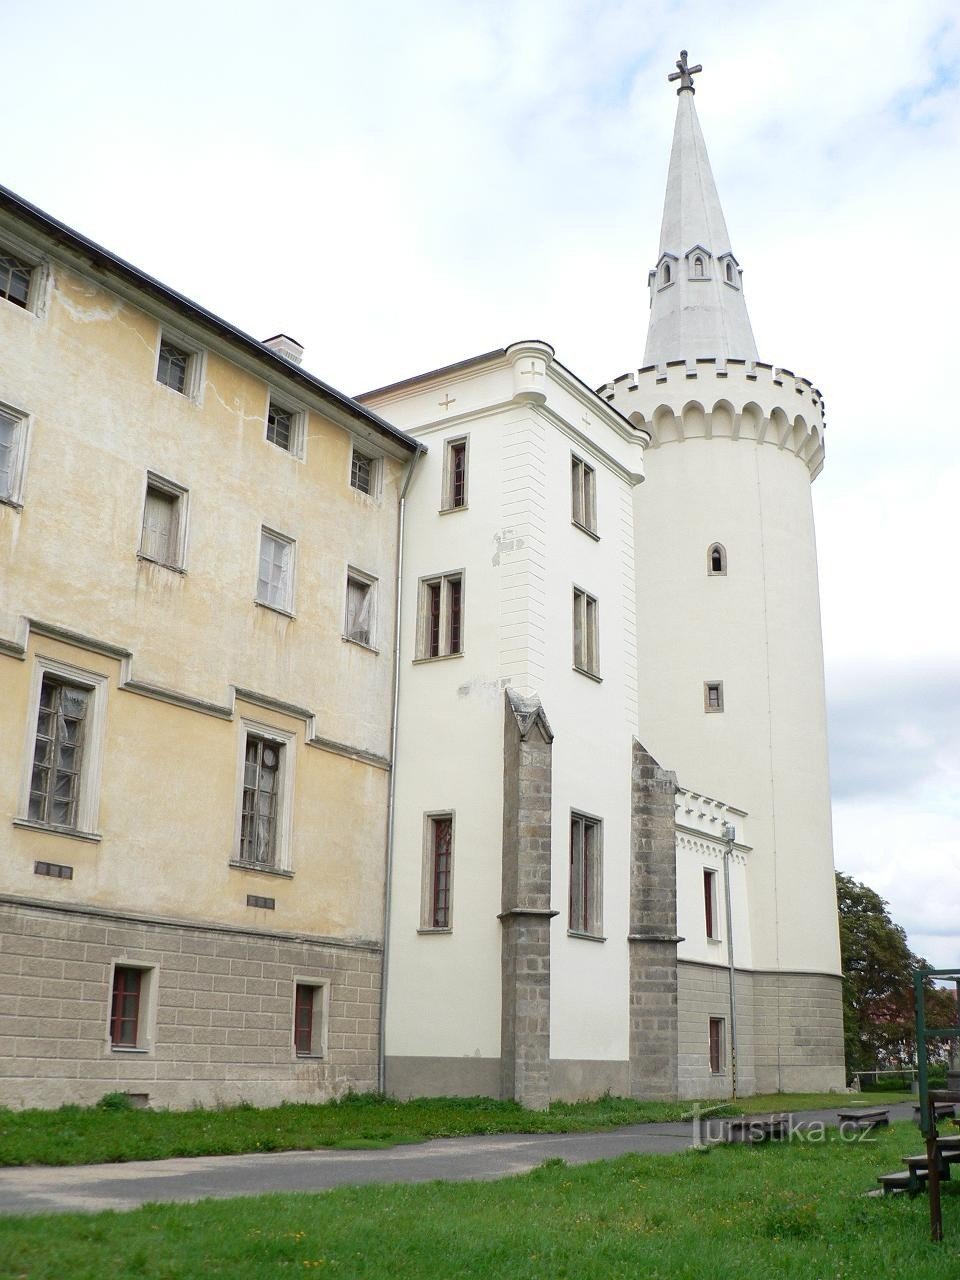 Borski grad, stolp